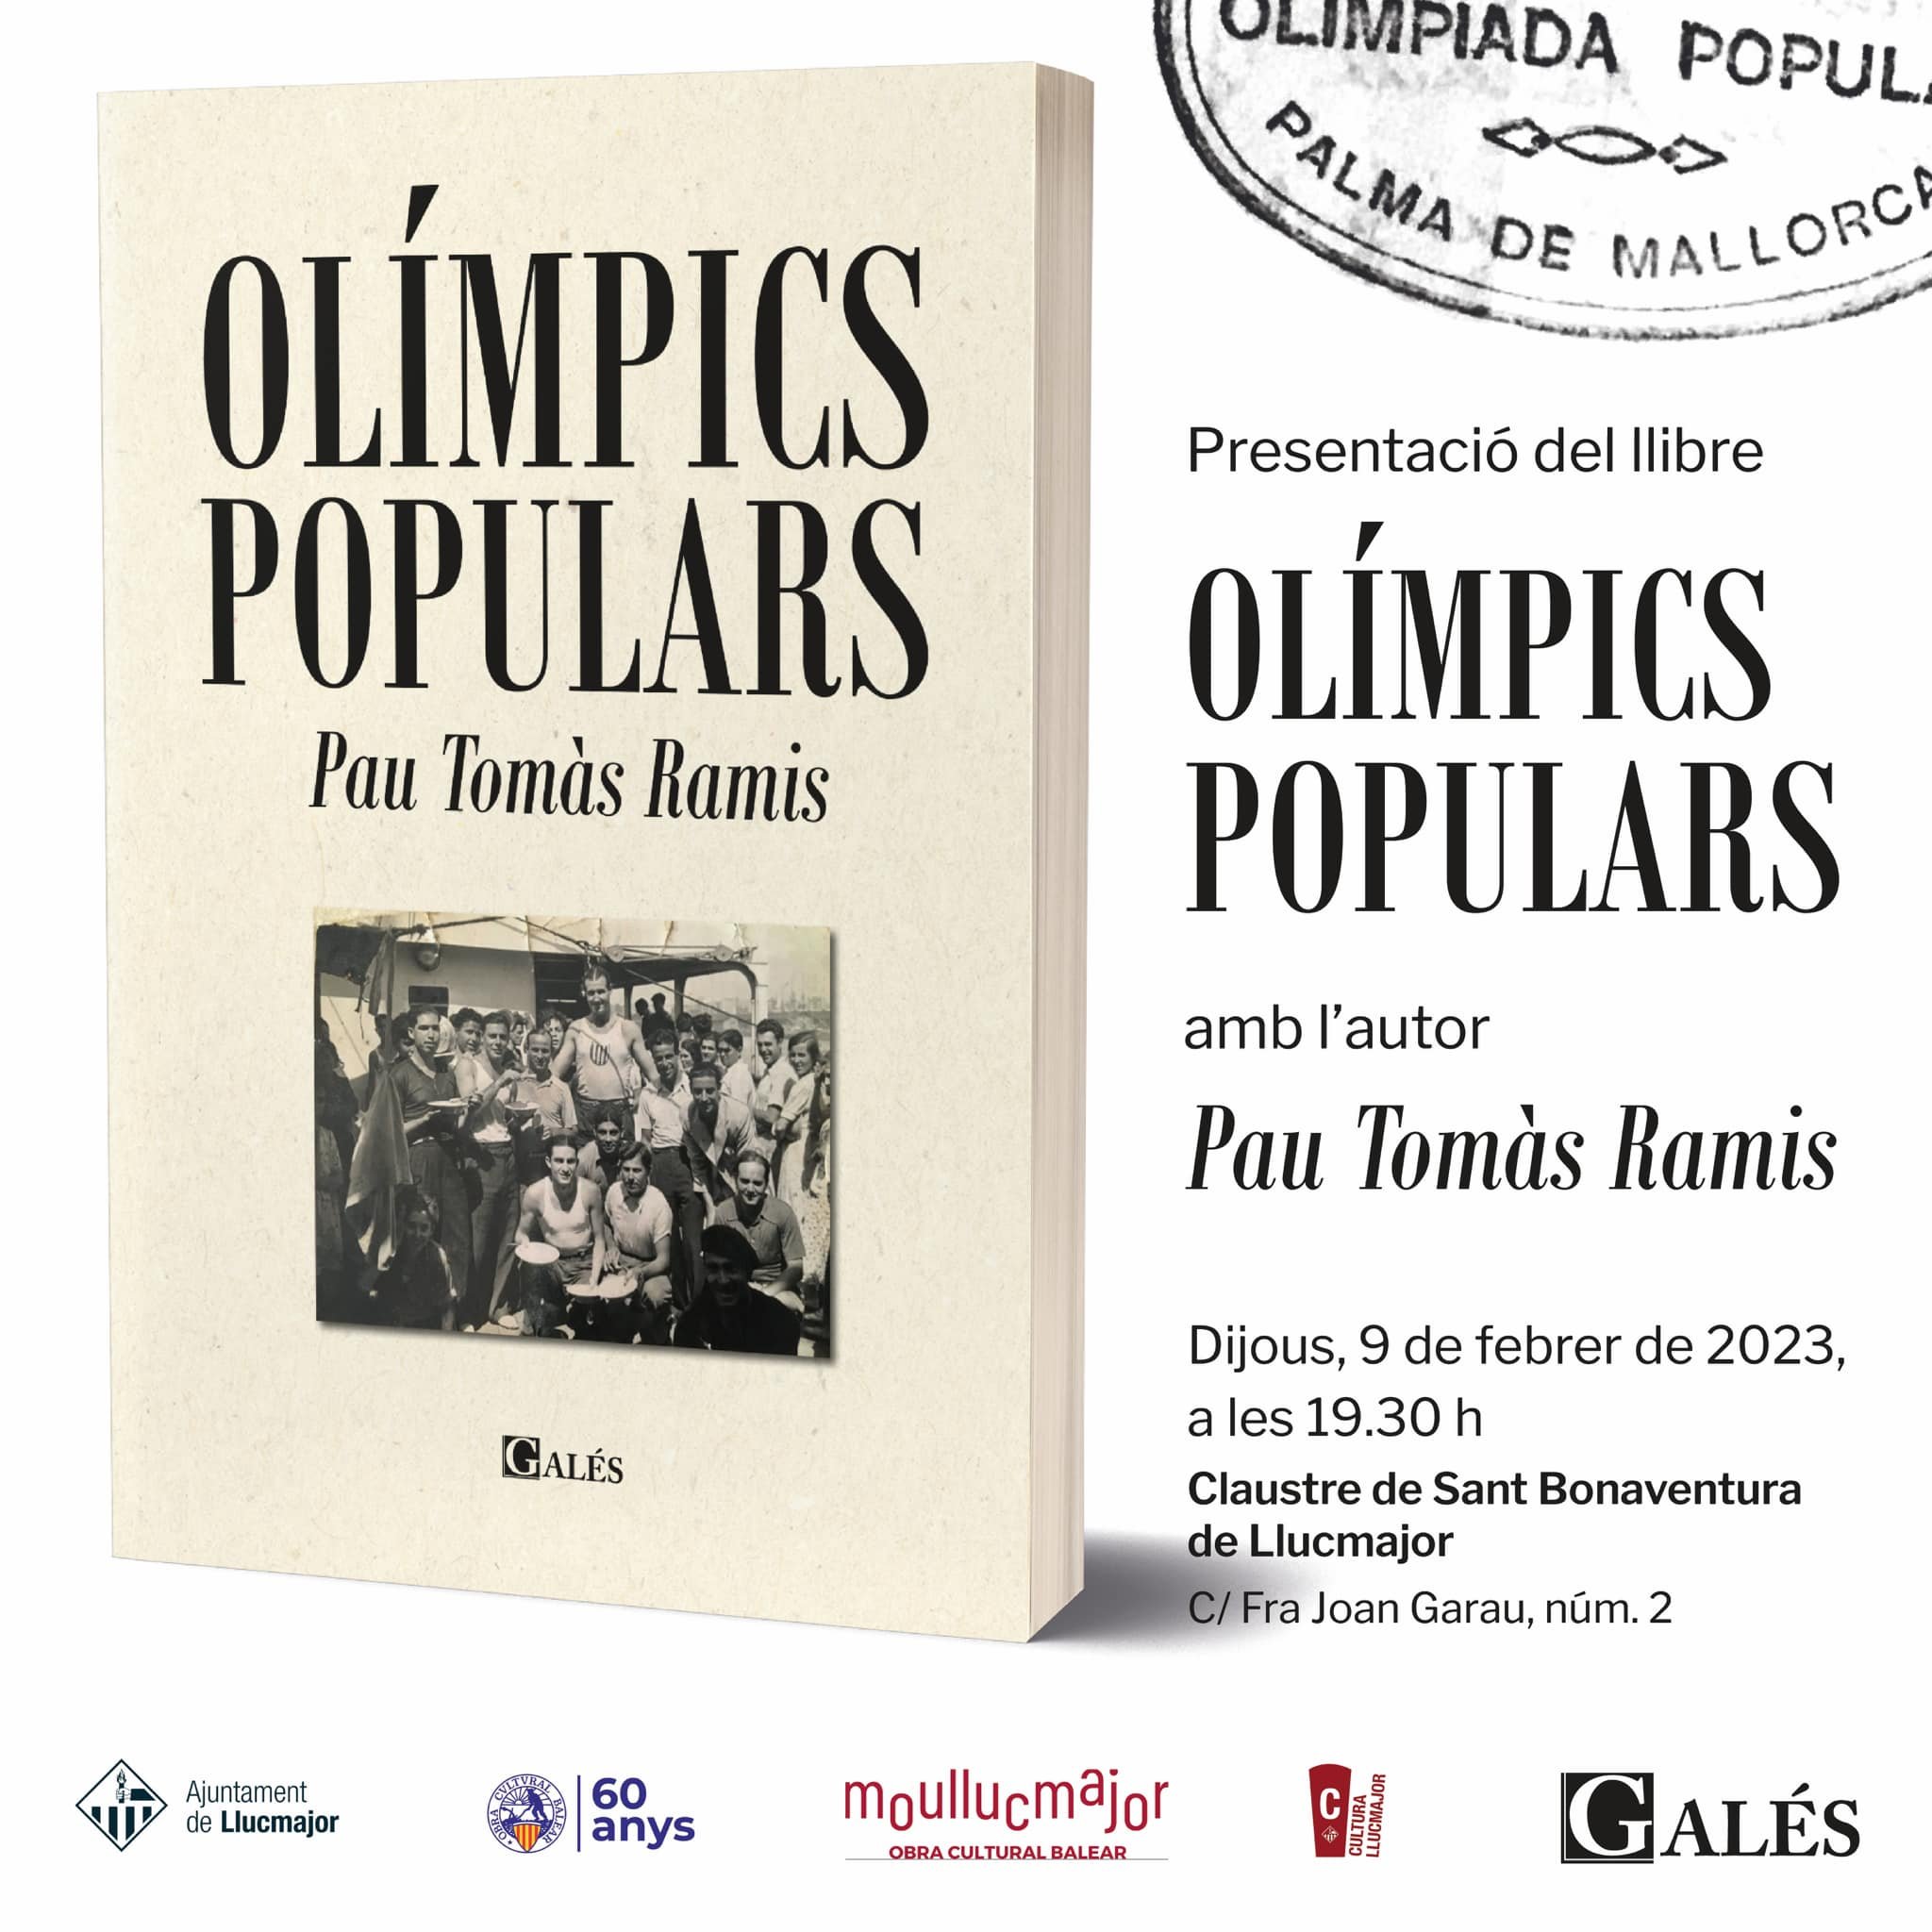 Presentació del llibre "Olímpics populars" (09-02-23)